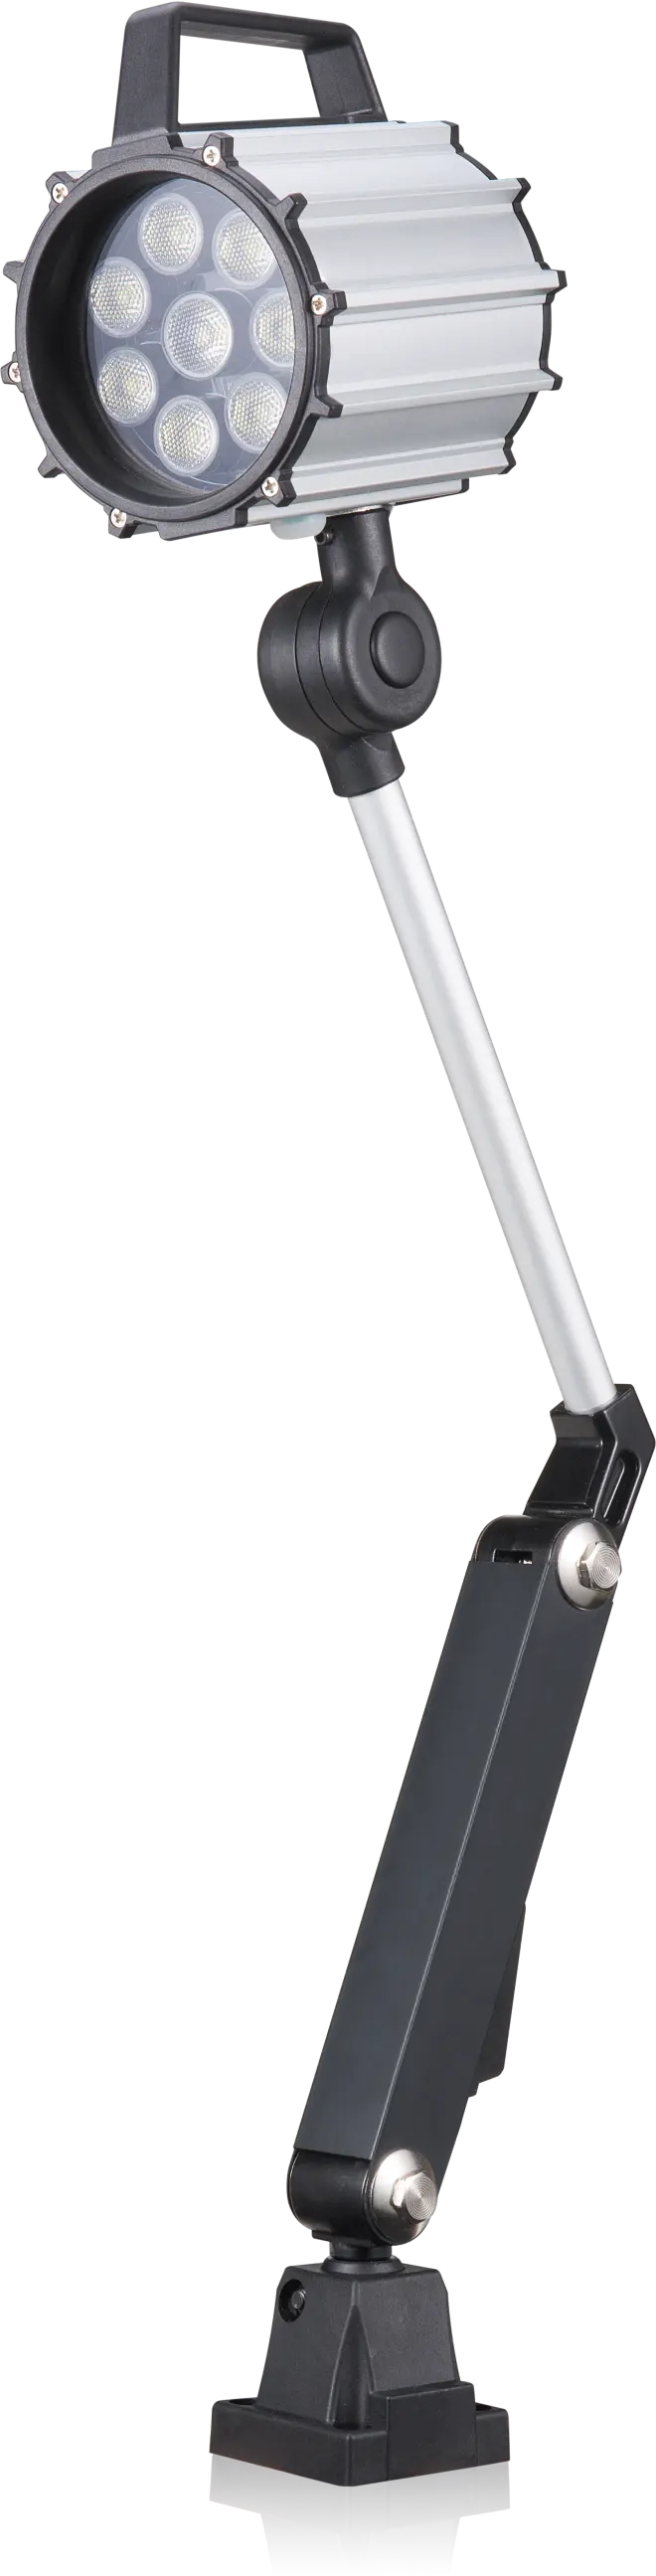 ODE OEM braccio regolabile ONN-M1 lampada per macchina 9.5W CNC luce da lavoro per uso industriale corpo in alluminio IP65 Rating CE ROHS FCC